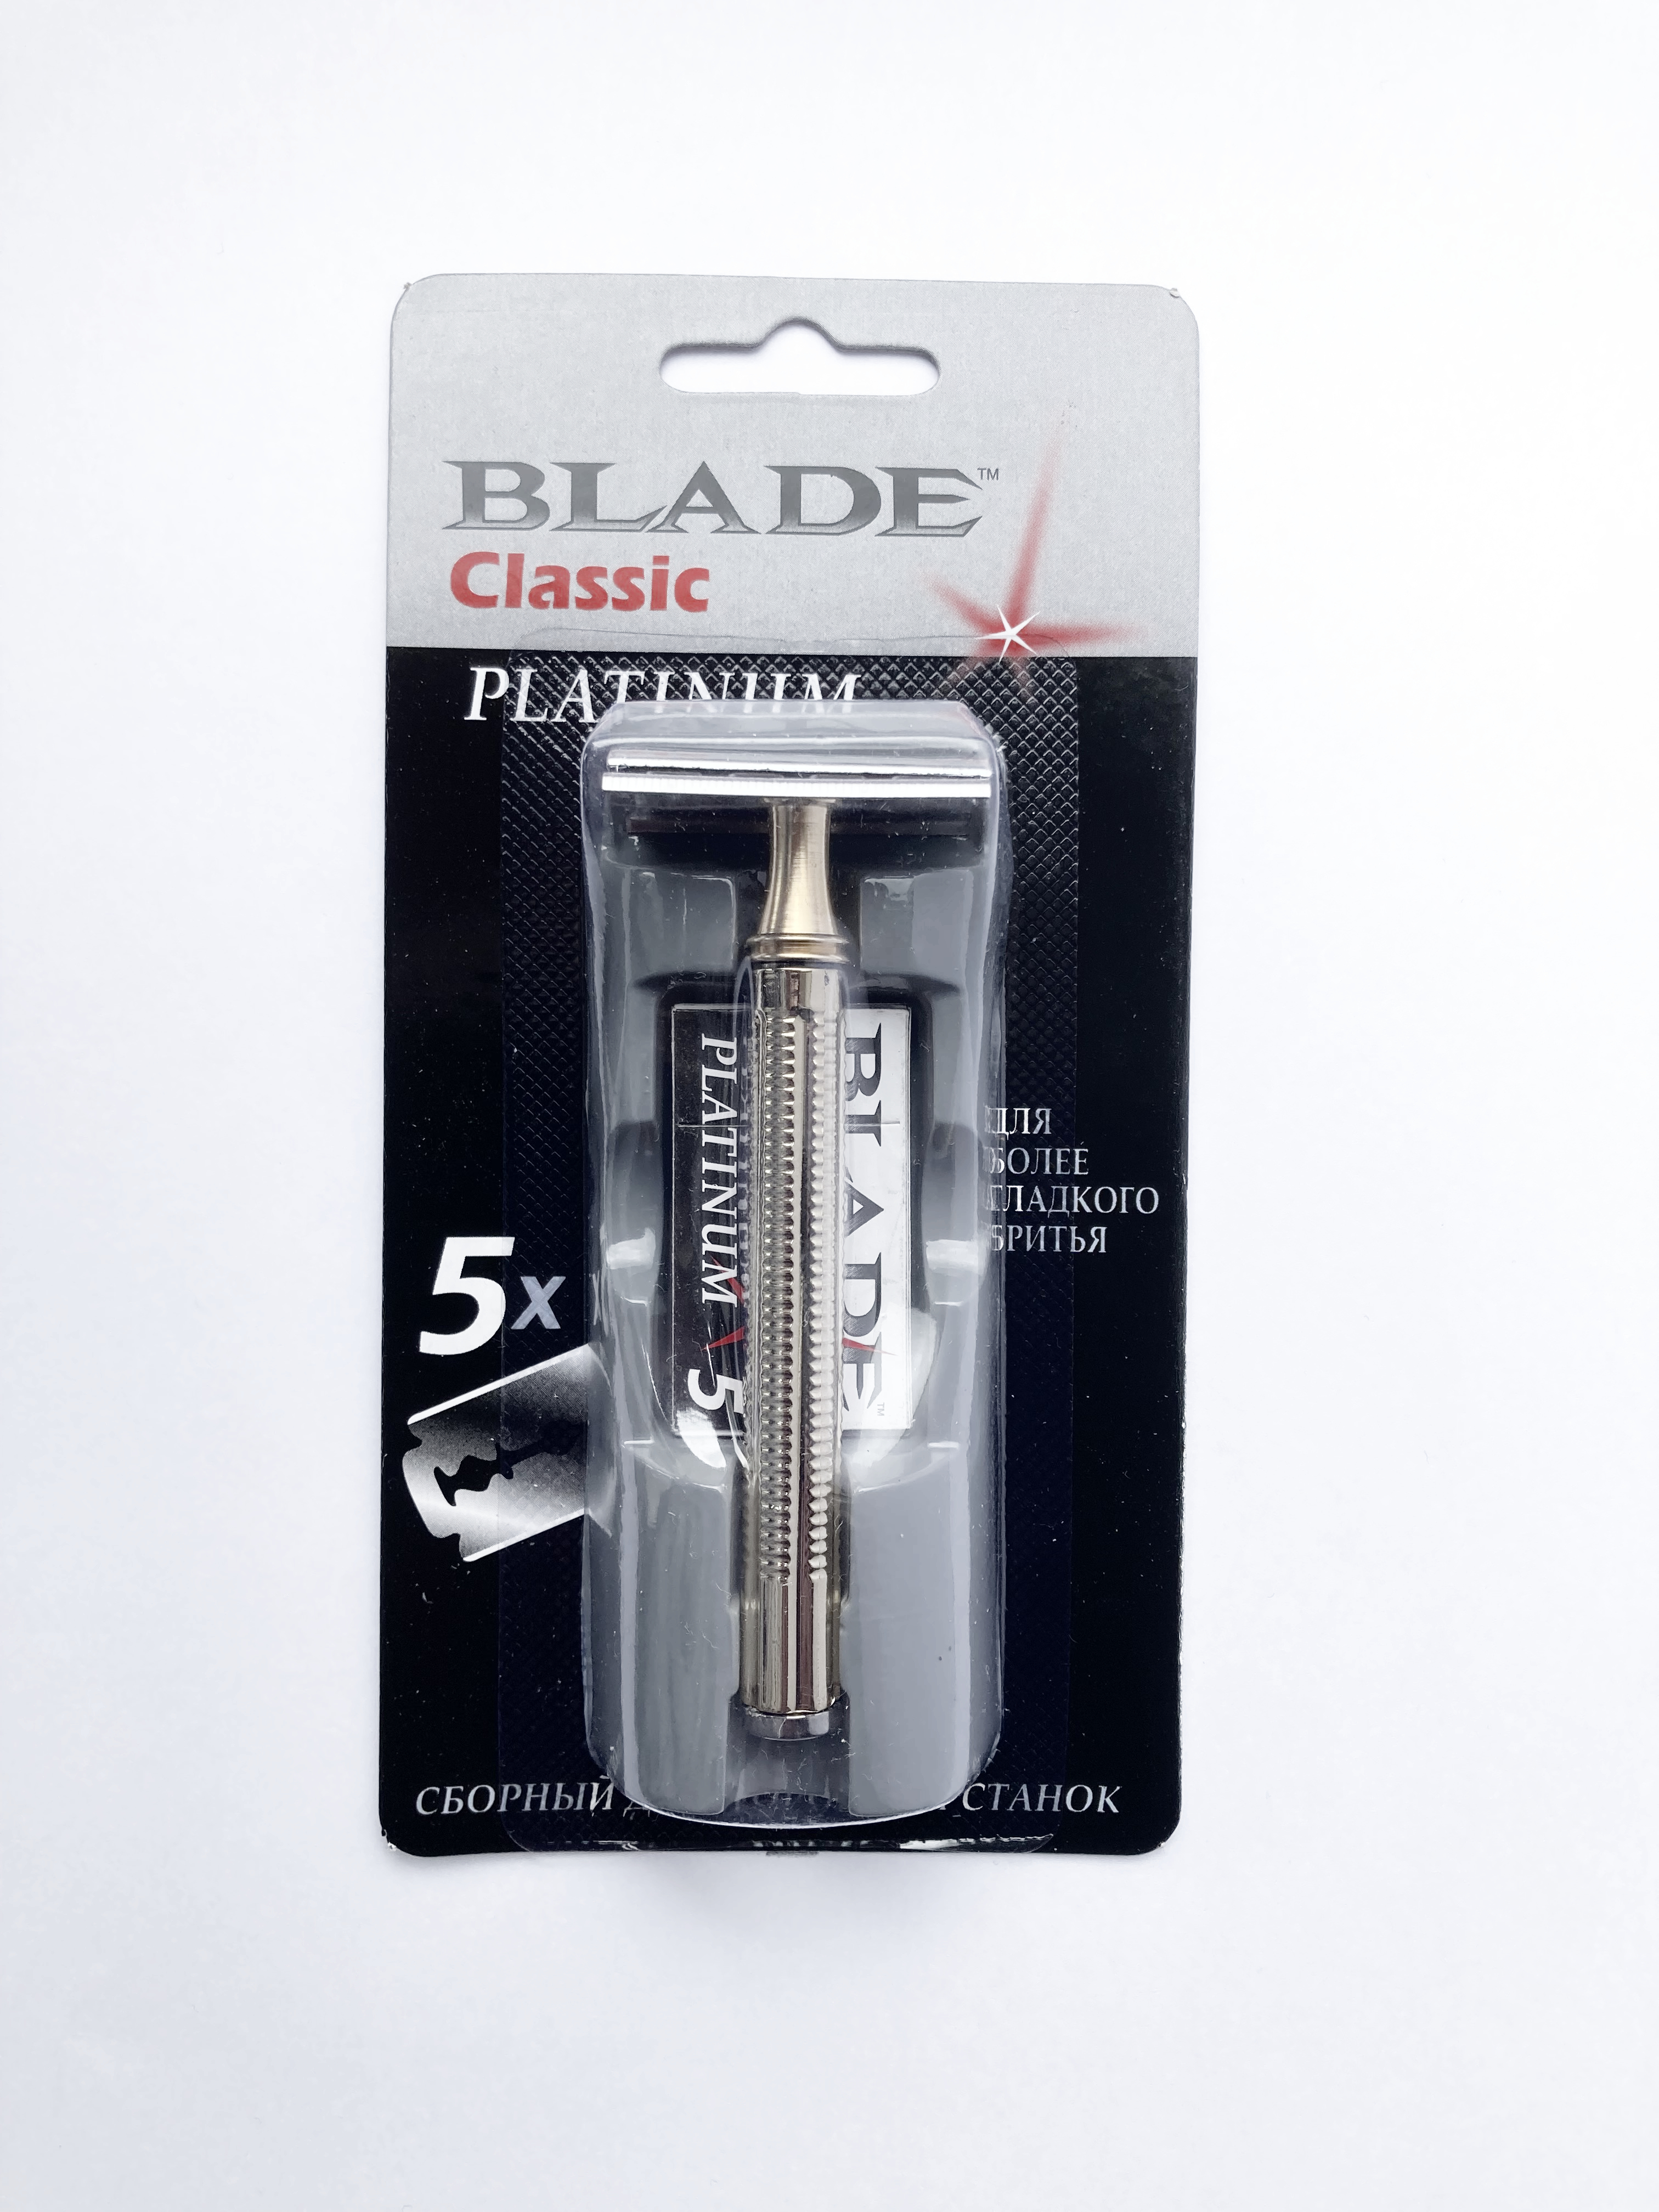 Blade Classic Platinum бритвенный станок + 5 лезвий + подставка